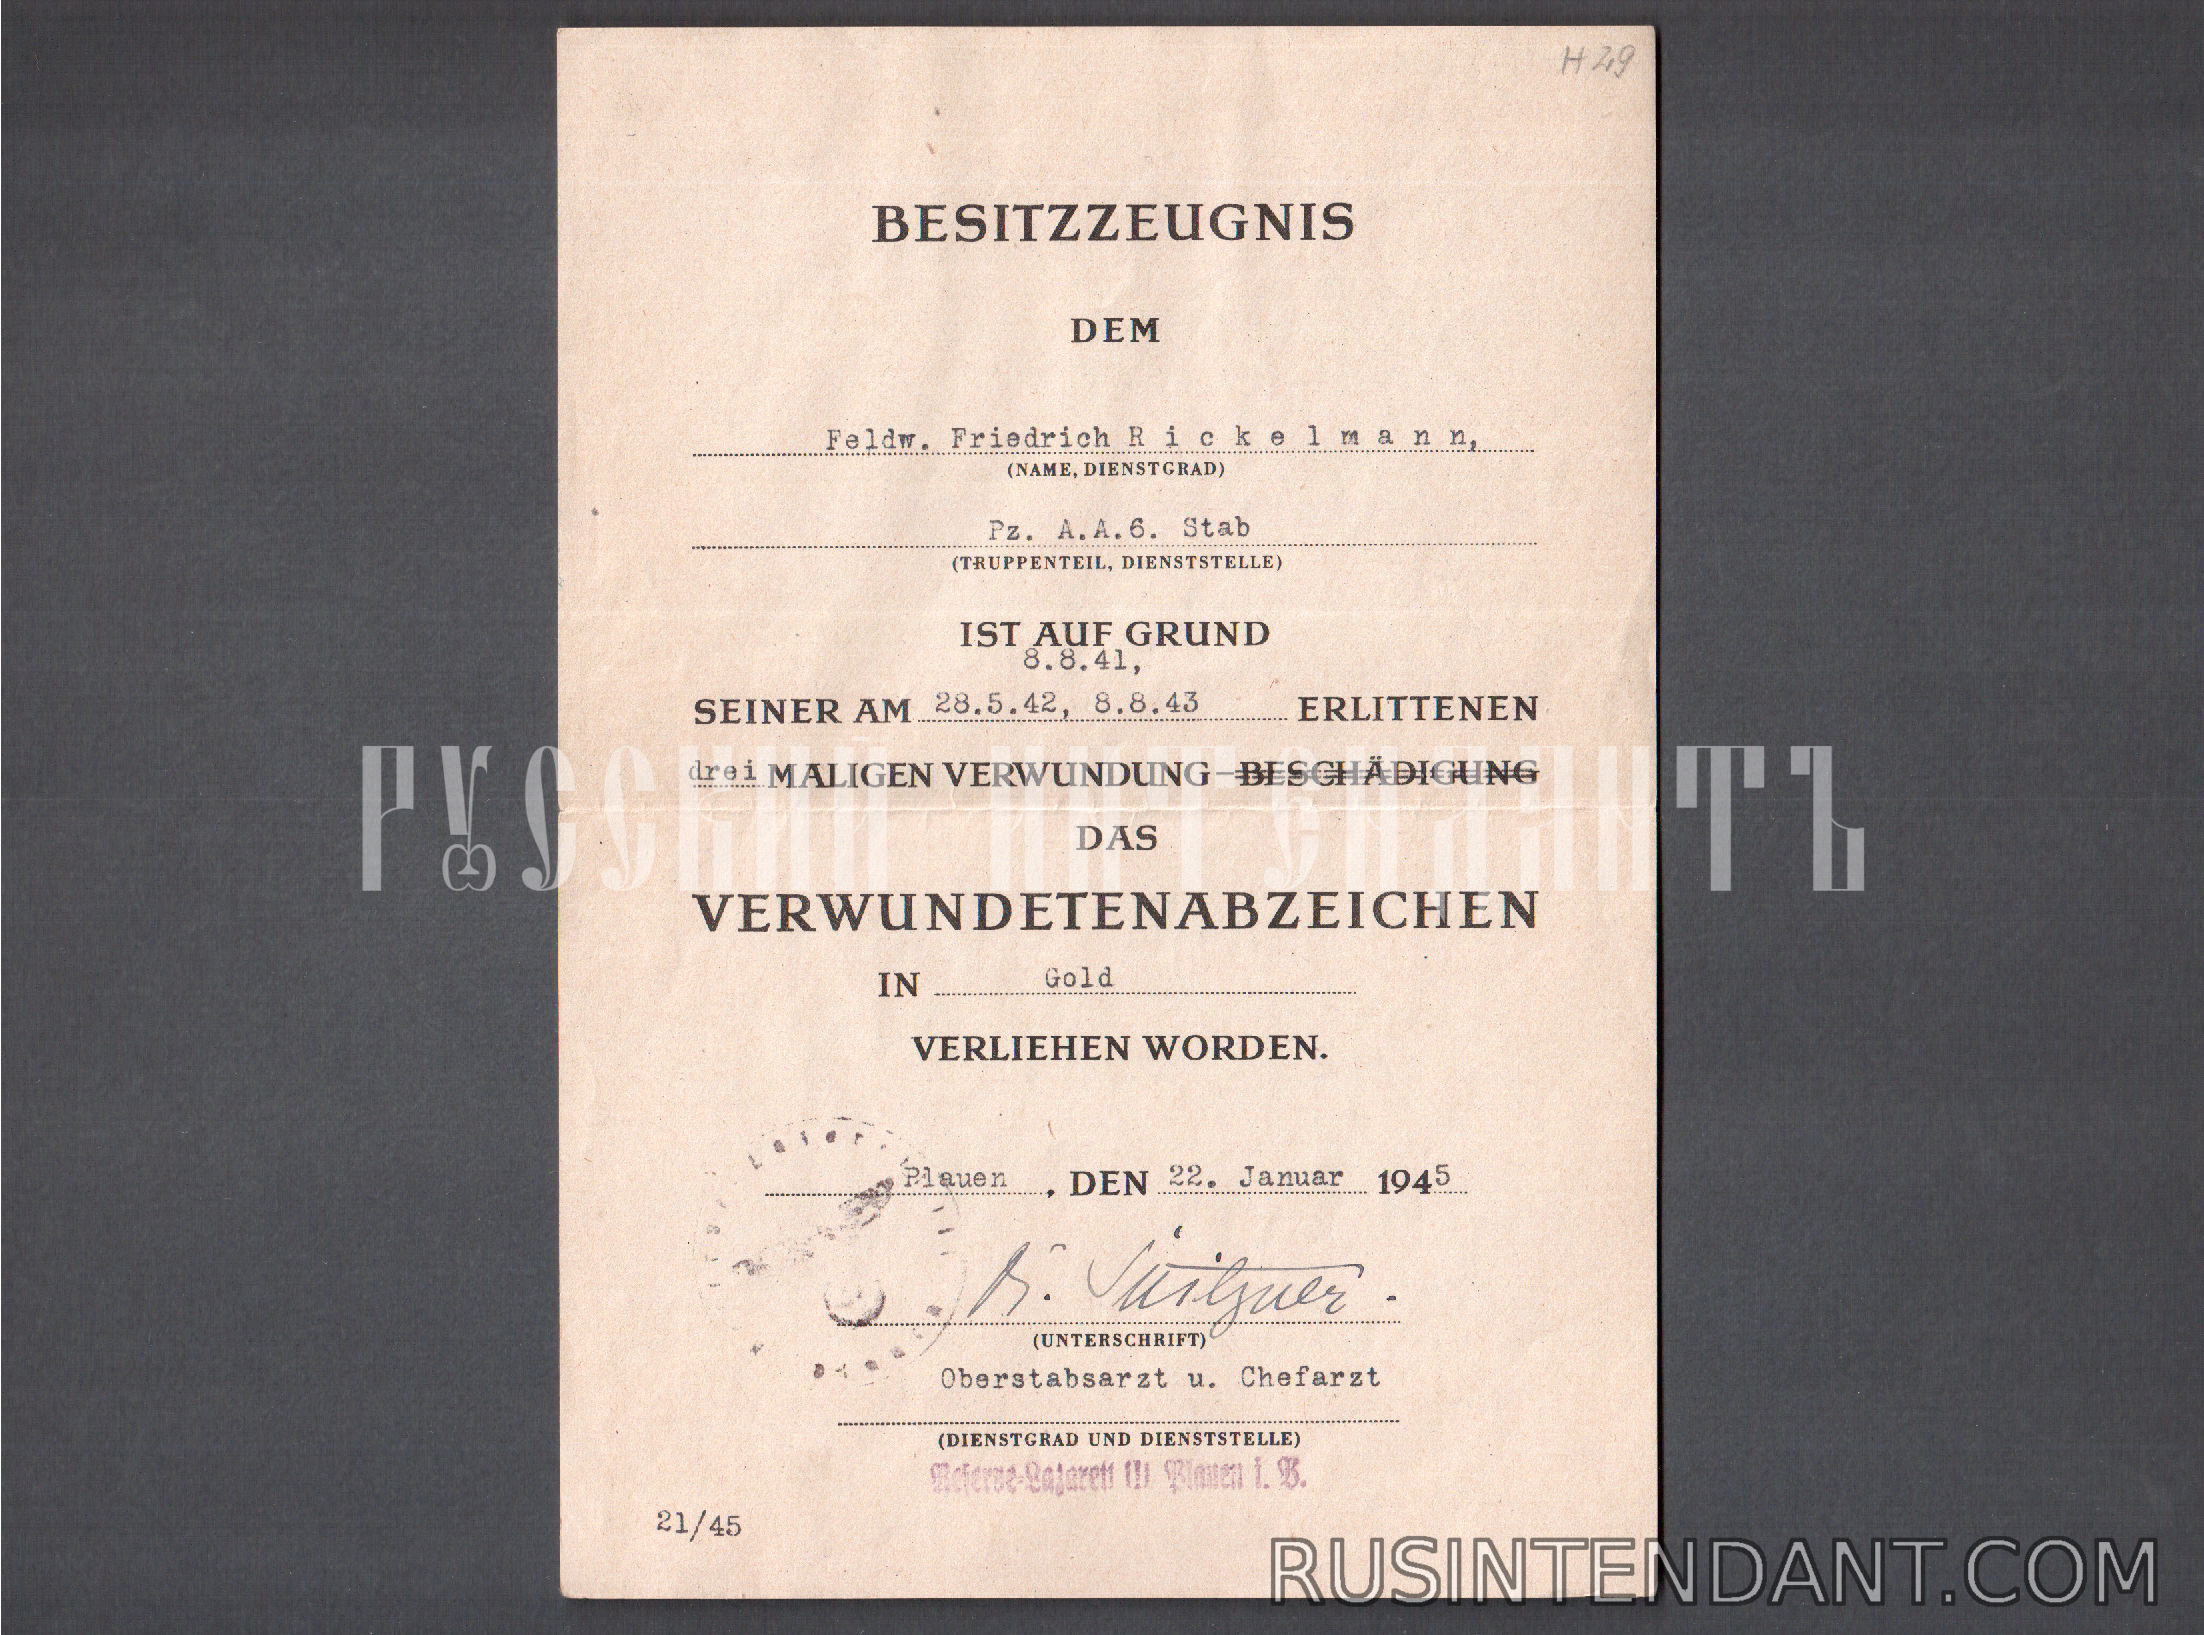 Фото 3: Группа наградных документов фельдфебеля Фридриха Рикельмана 